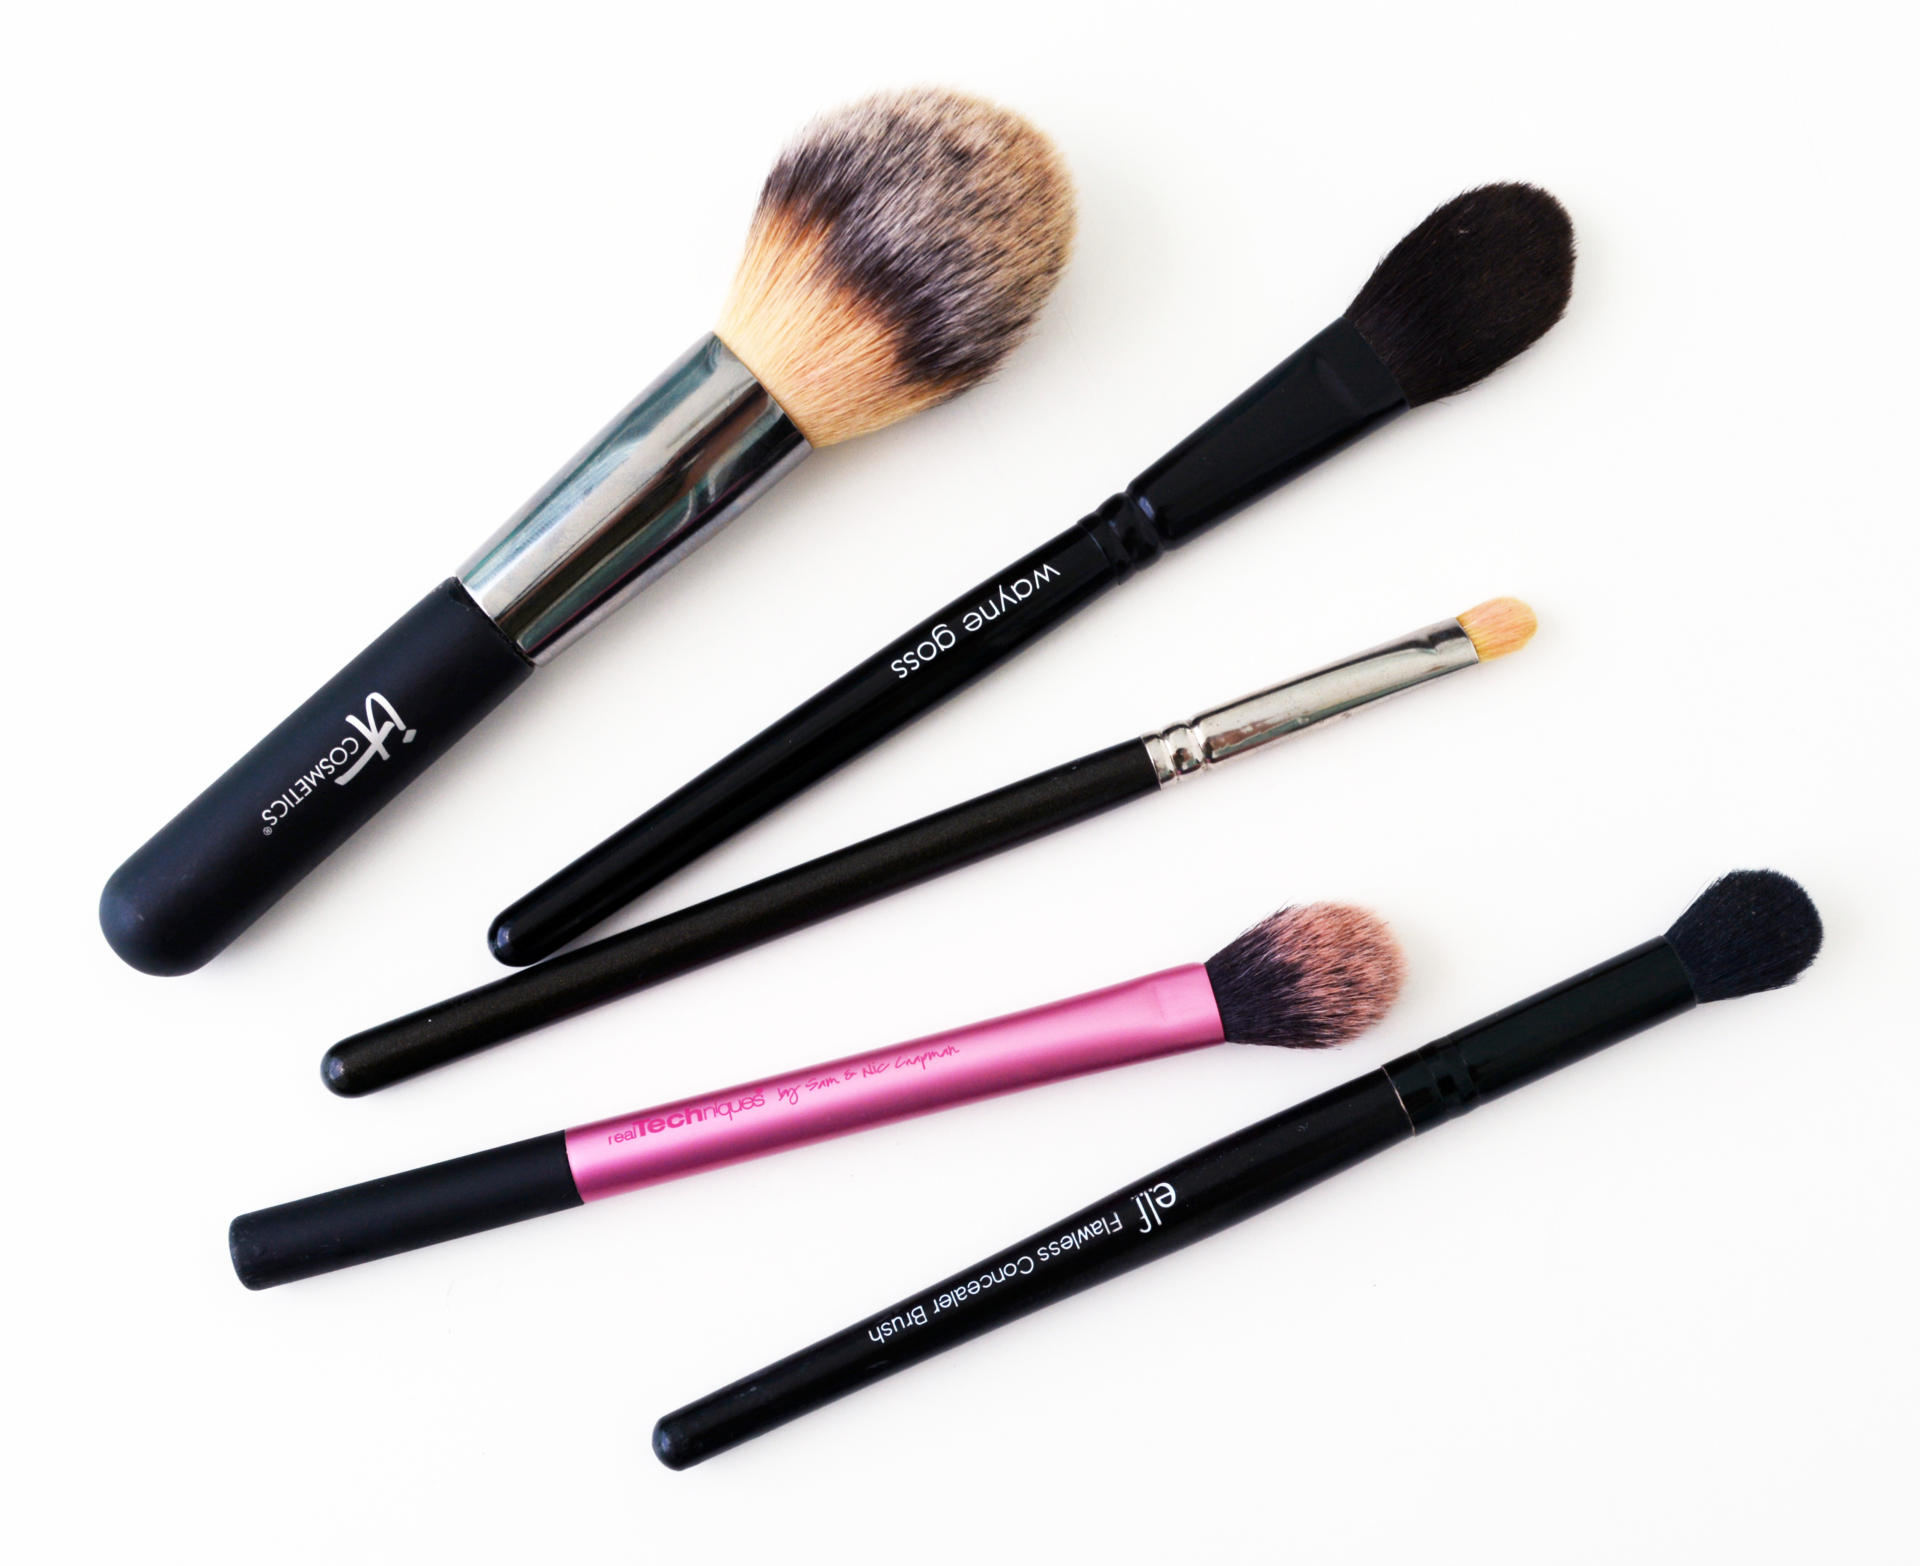 Top 5 | Makeup Brushes